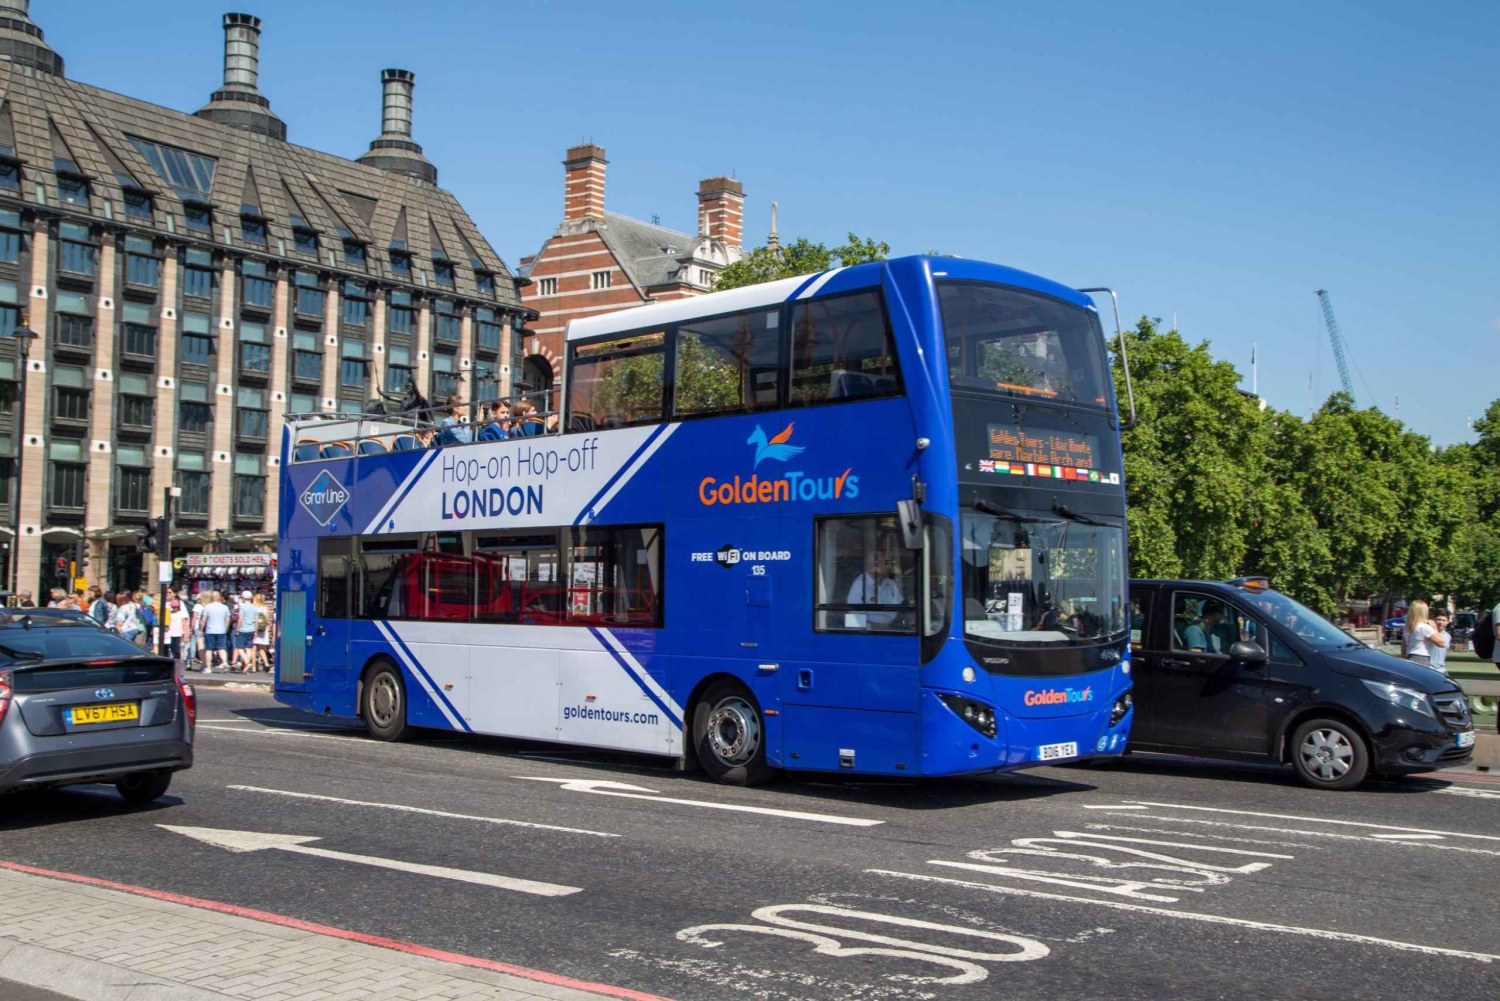 Лондон: экскурсионный автобус Golden Tours с открытым верхом Hop-on Hop-off